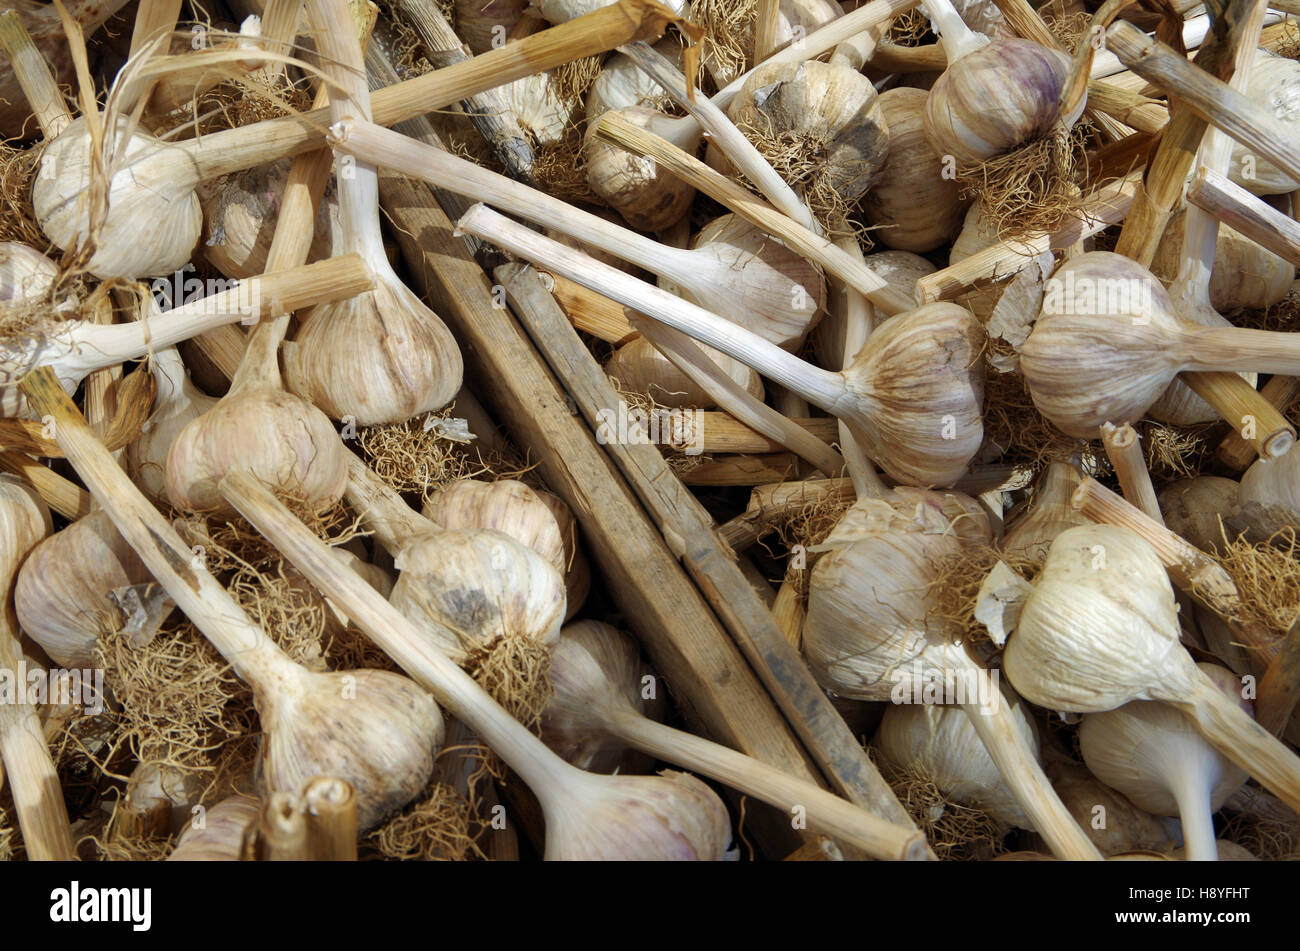 Rustico bulbi di aglio con lunghi steli in legno da mercato degli agricoltori delle casse Foto Stock